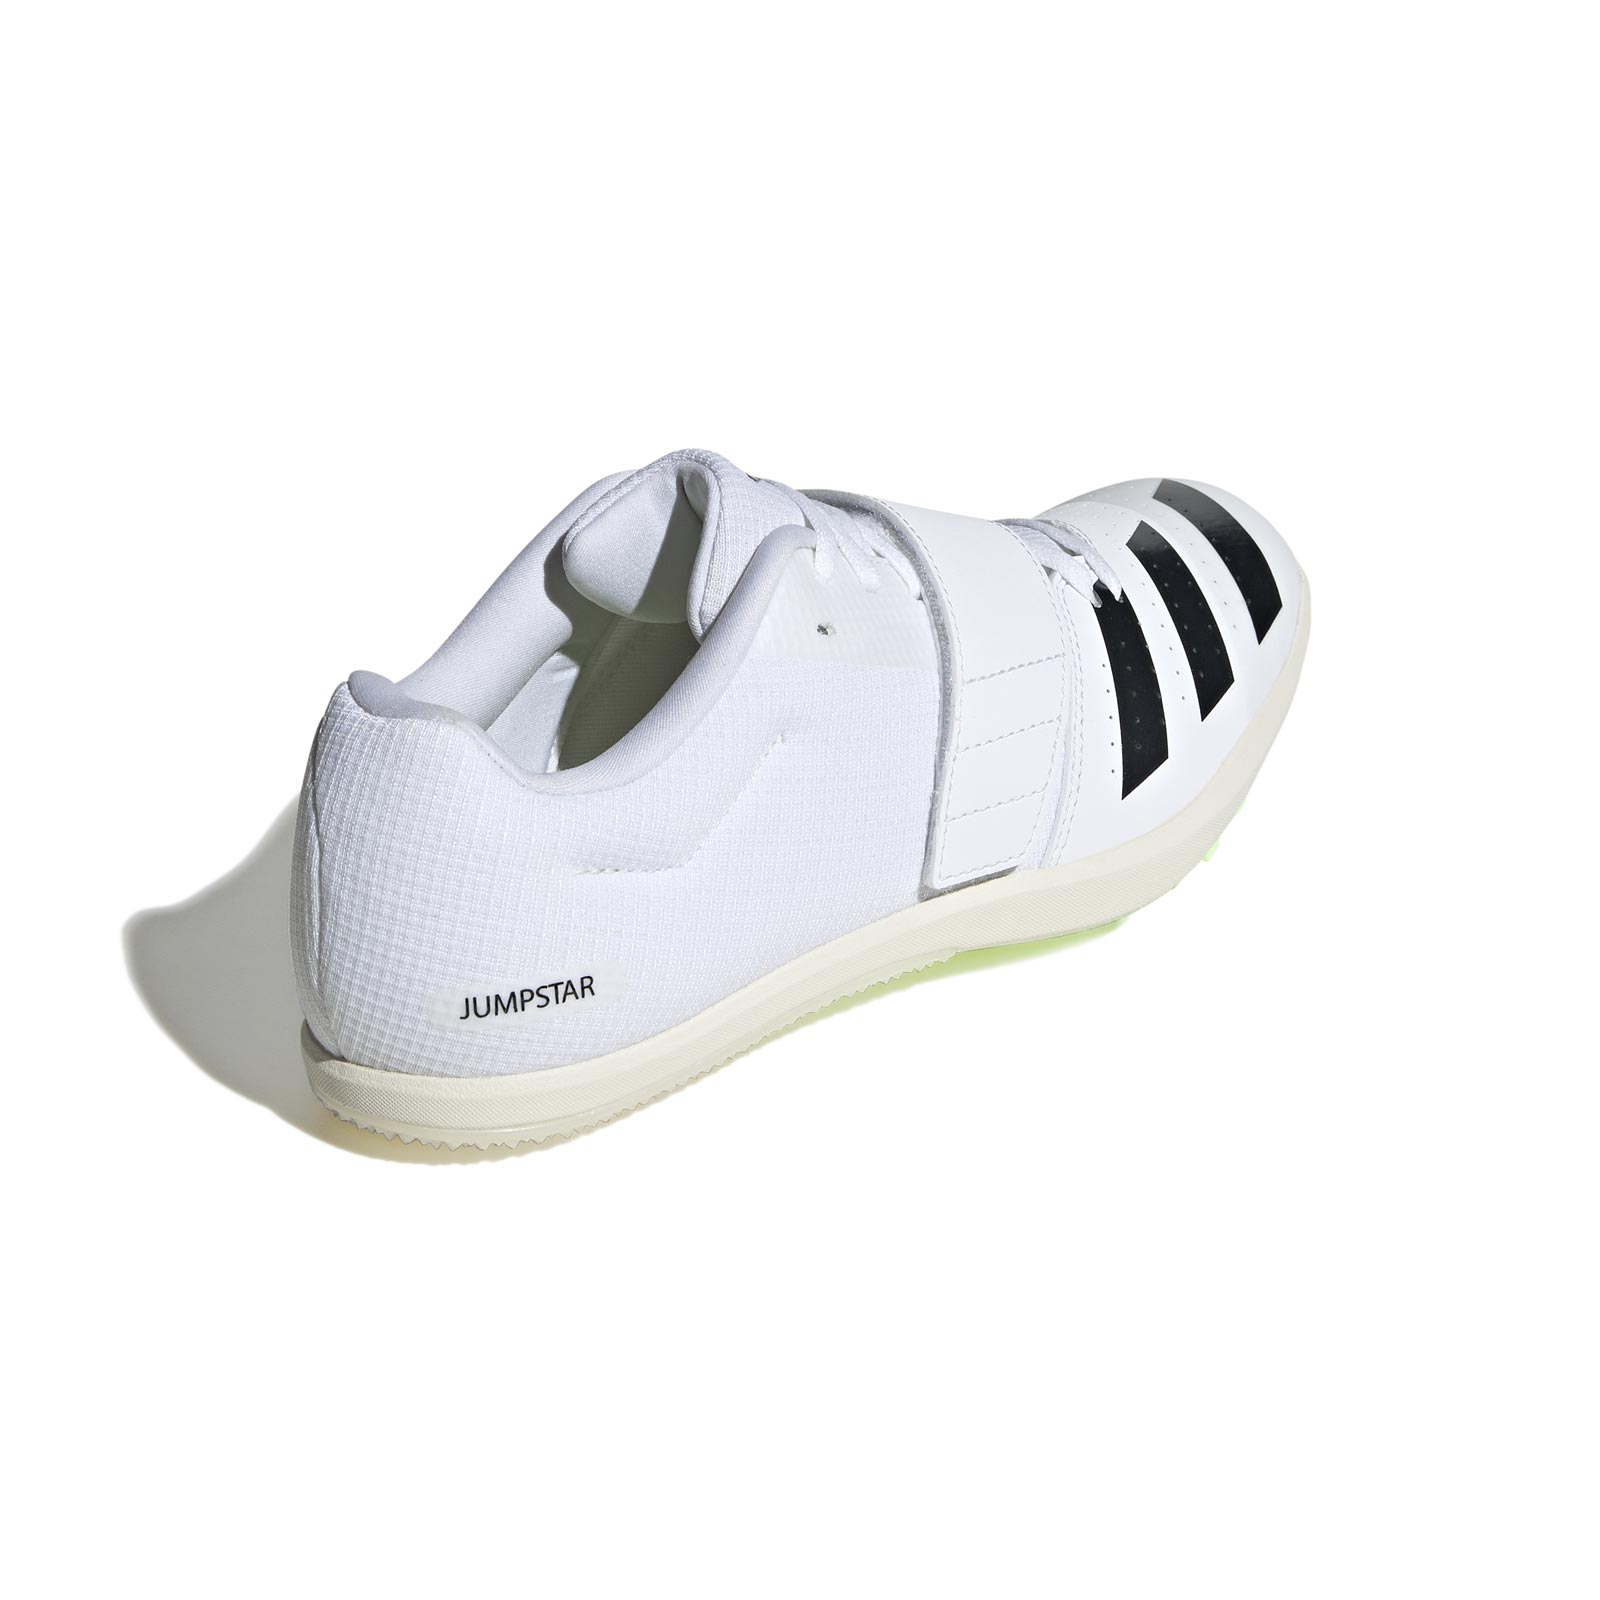 adidas Jumpstar Unisex Shoes